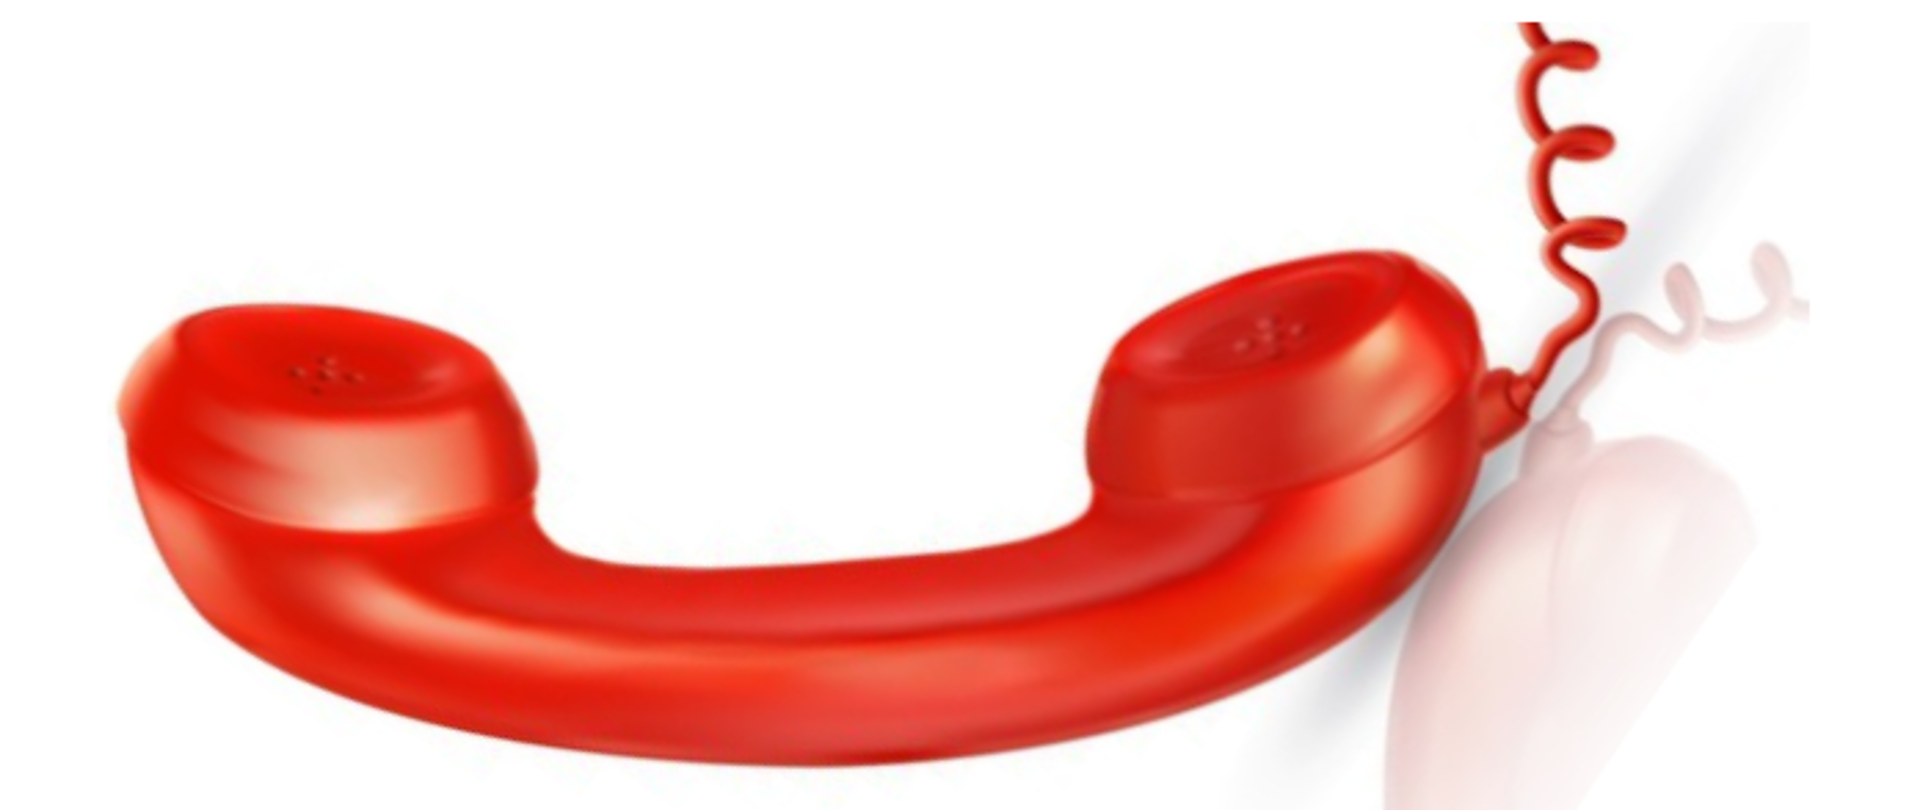 Grafika przedstawia słuchawkę telefoniczna w kolorze czerwonym na białym, jednolitym tle.